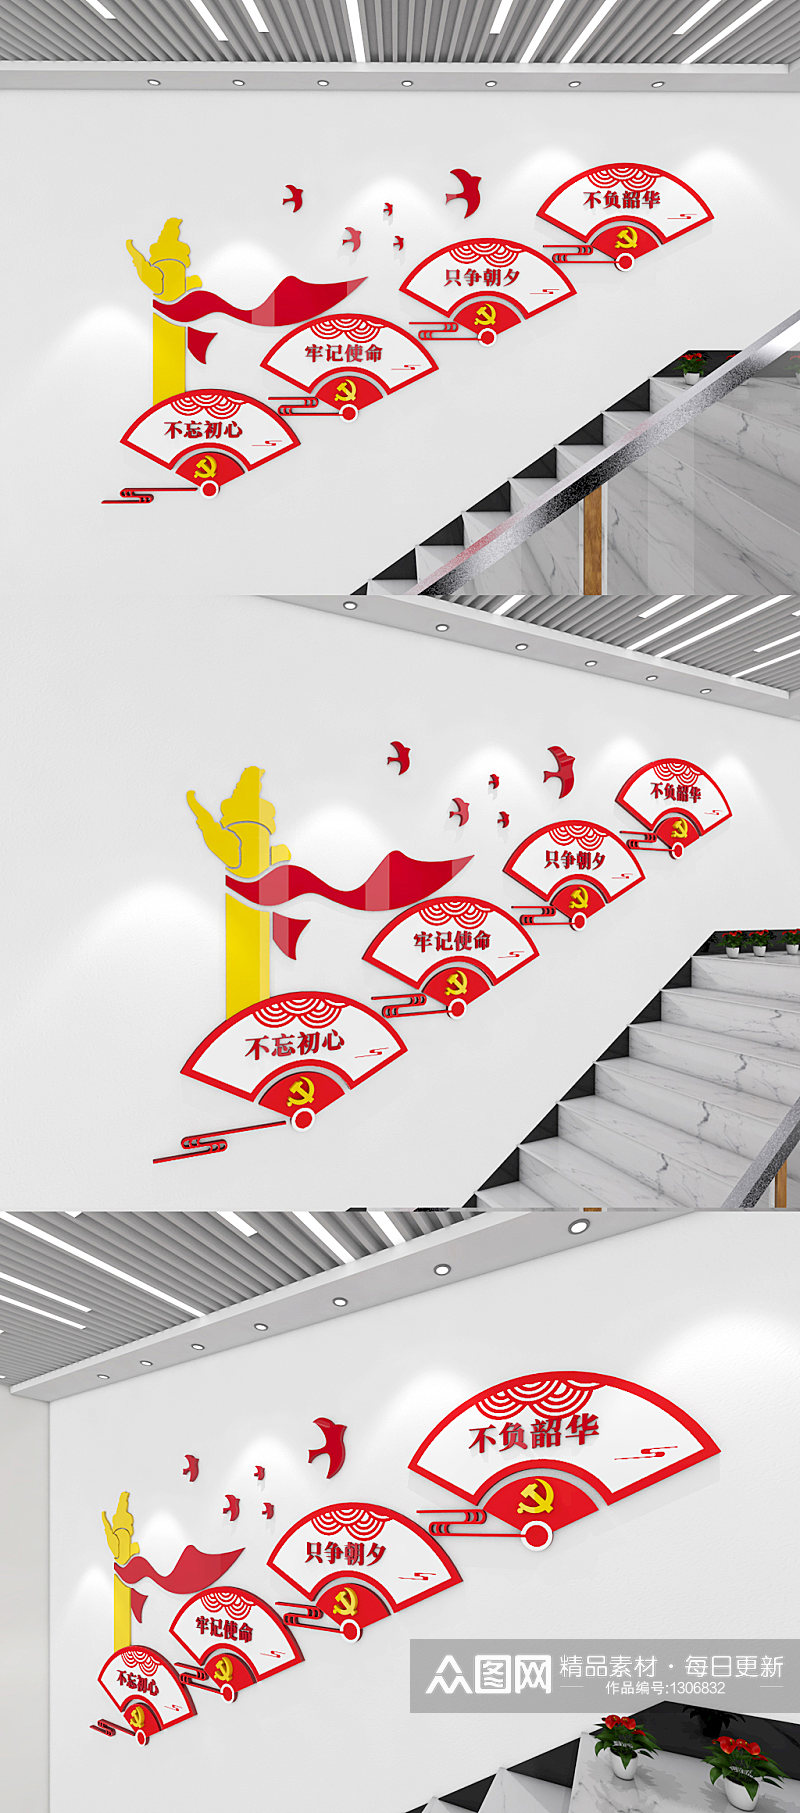 红色扇字扇形不忘初心党建标语楼梯文化墙素材